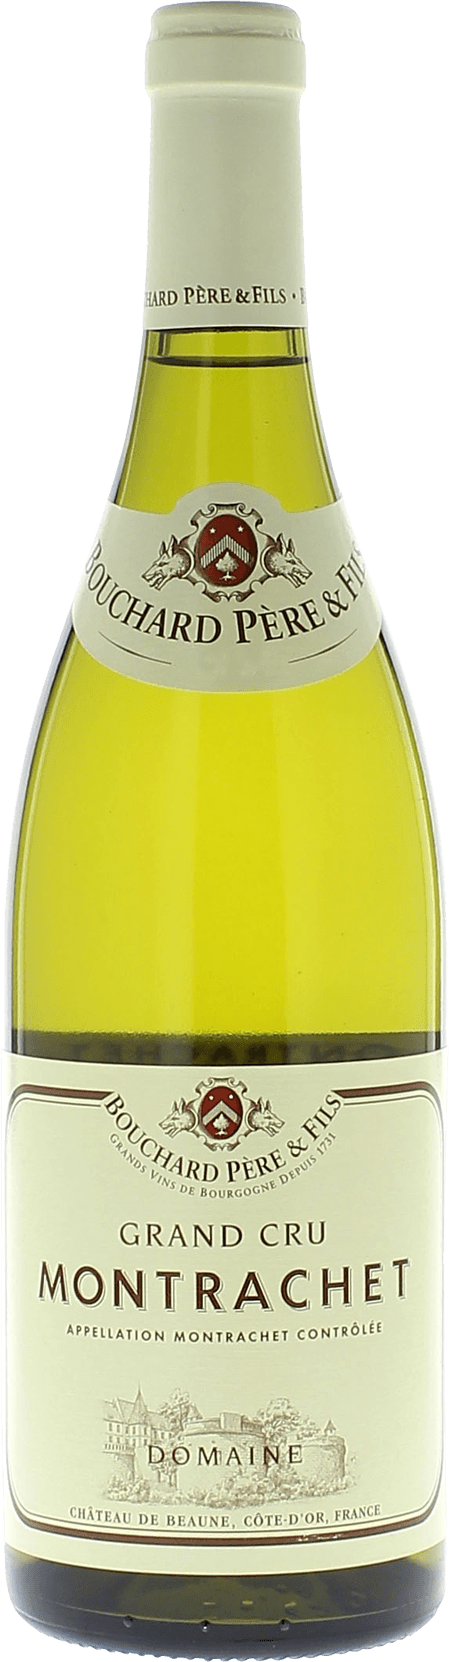 Montrachet grand cru 2018  BOUCHARD Pre et fils, Bourgogne blanc